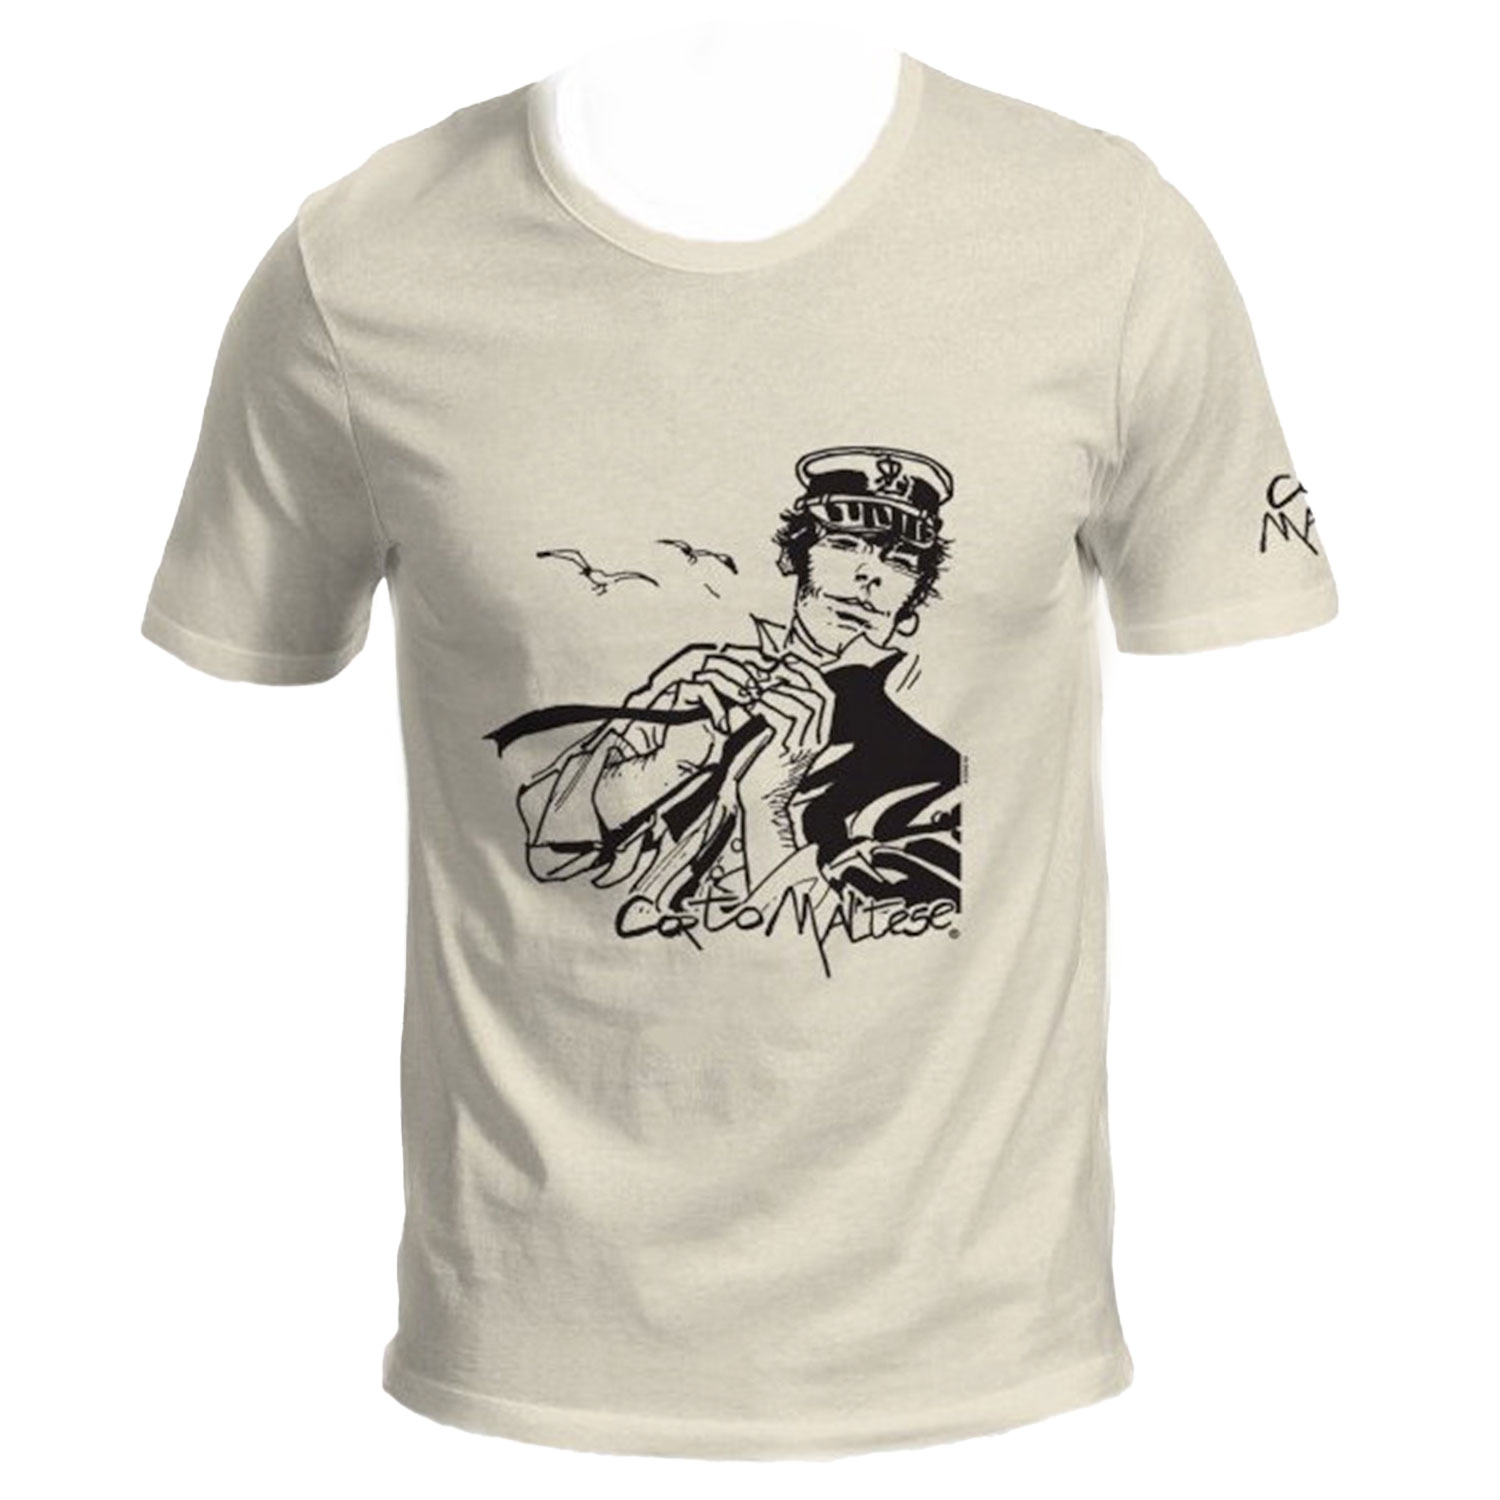 T-shirt Hugo Pratt : Corto Maltese nel vento - Greggio - Taglia S